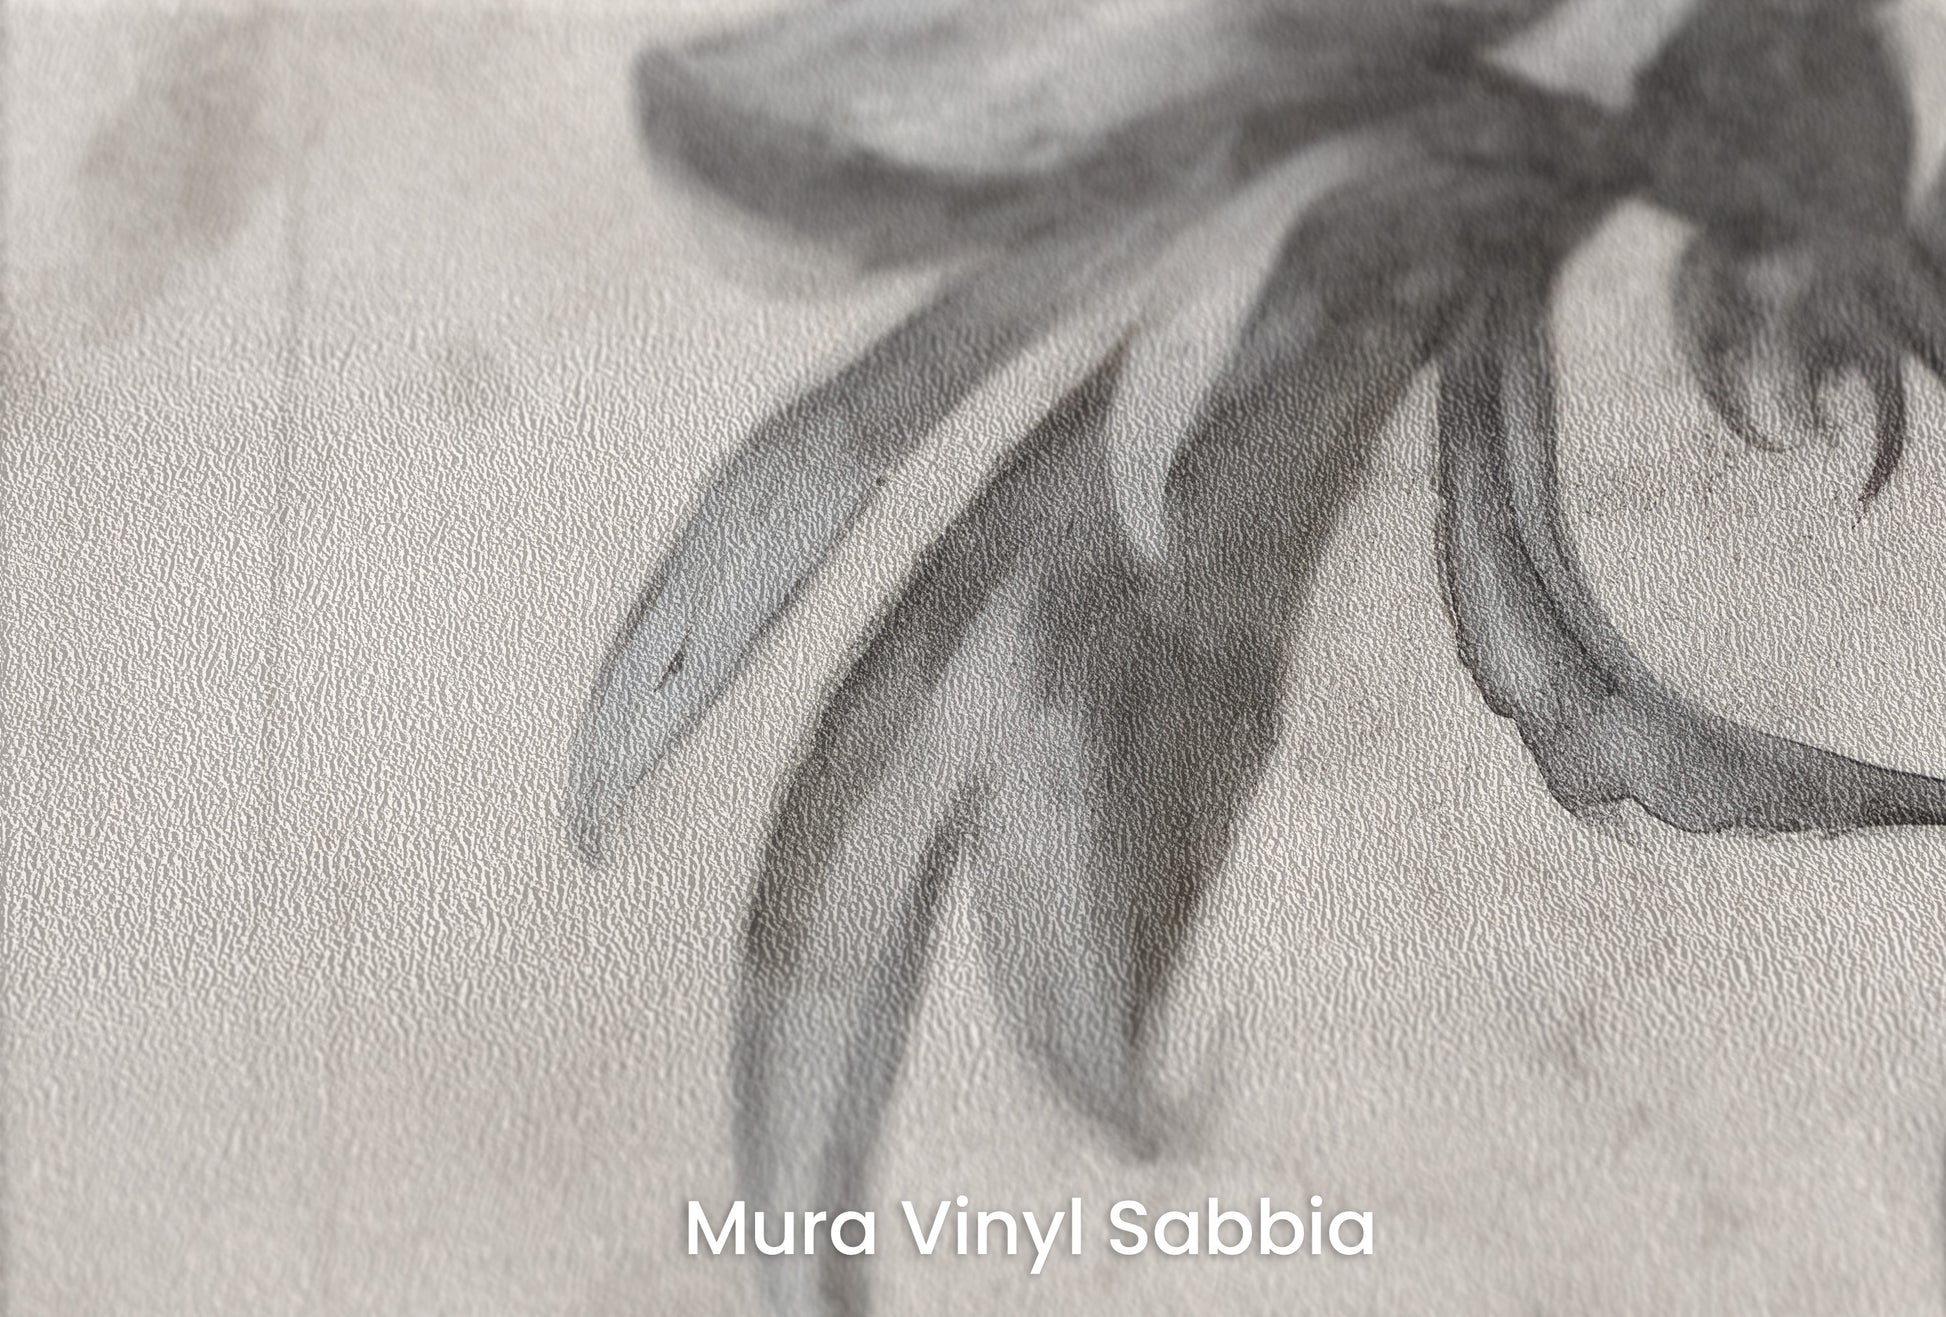 Zbliżenie na artystyczną fototapetę o nazwie MONOCHROME BLOOM INK SKETCH na podłożu Mura Vinyl Sabbia struktura grubego ziarna piasku.